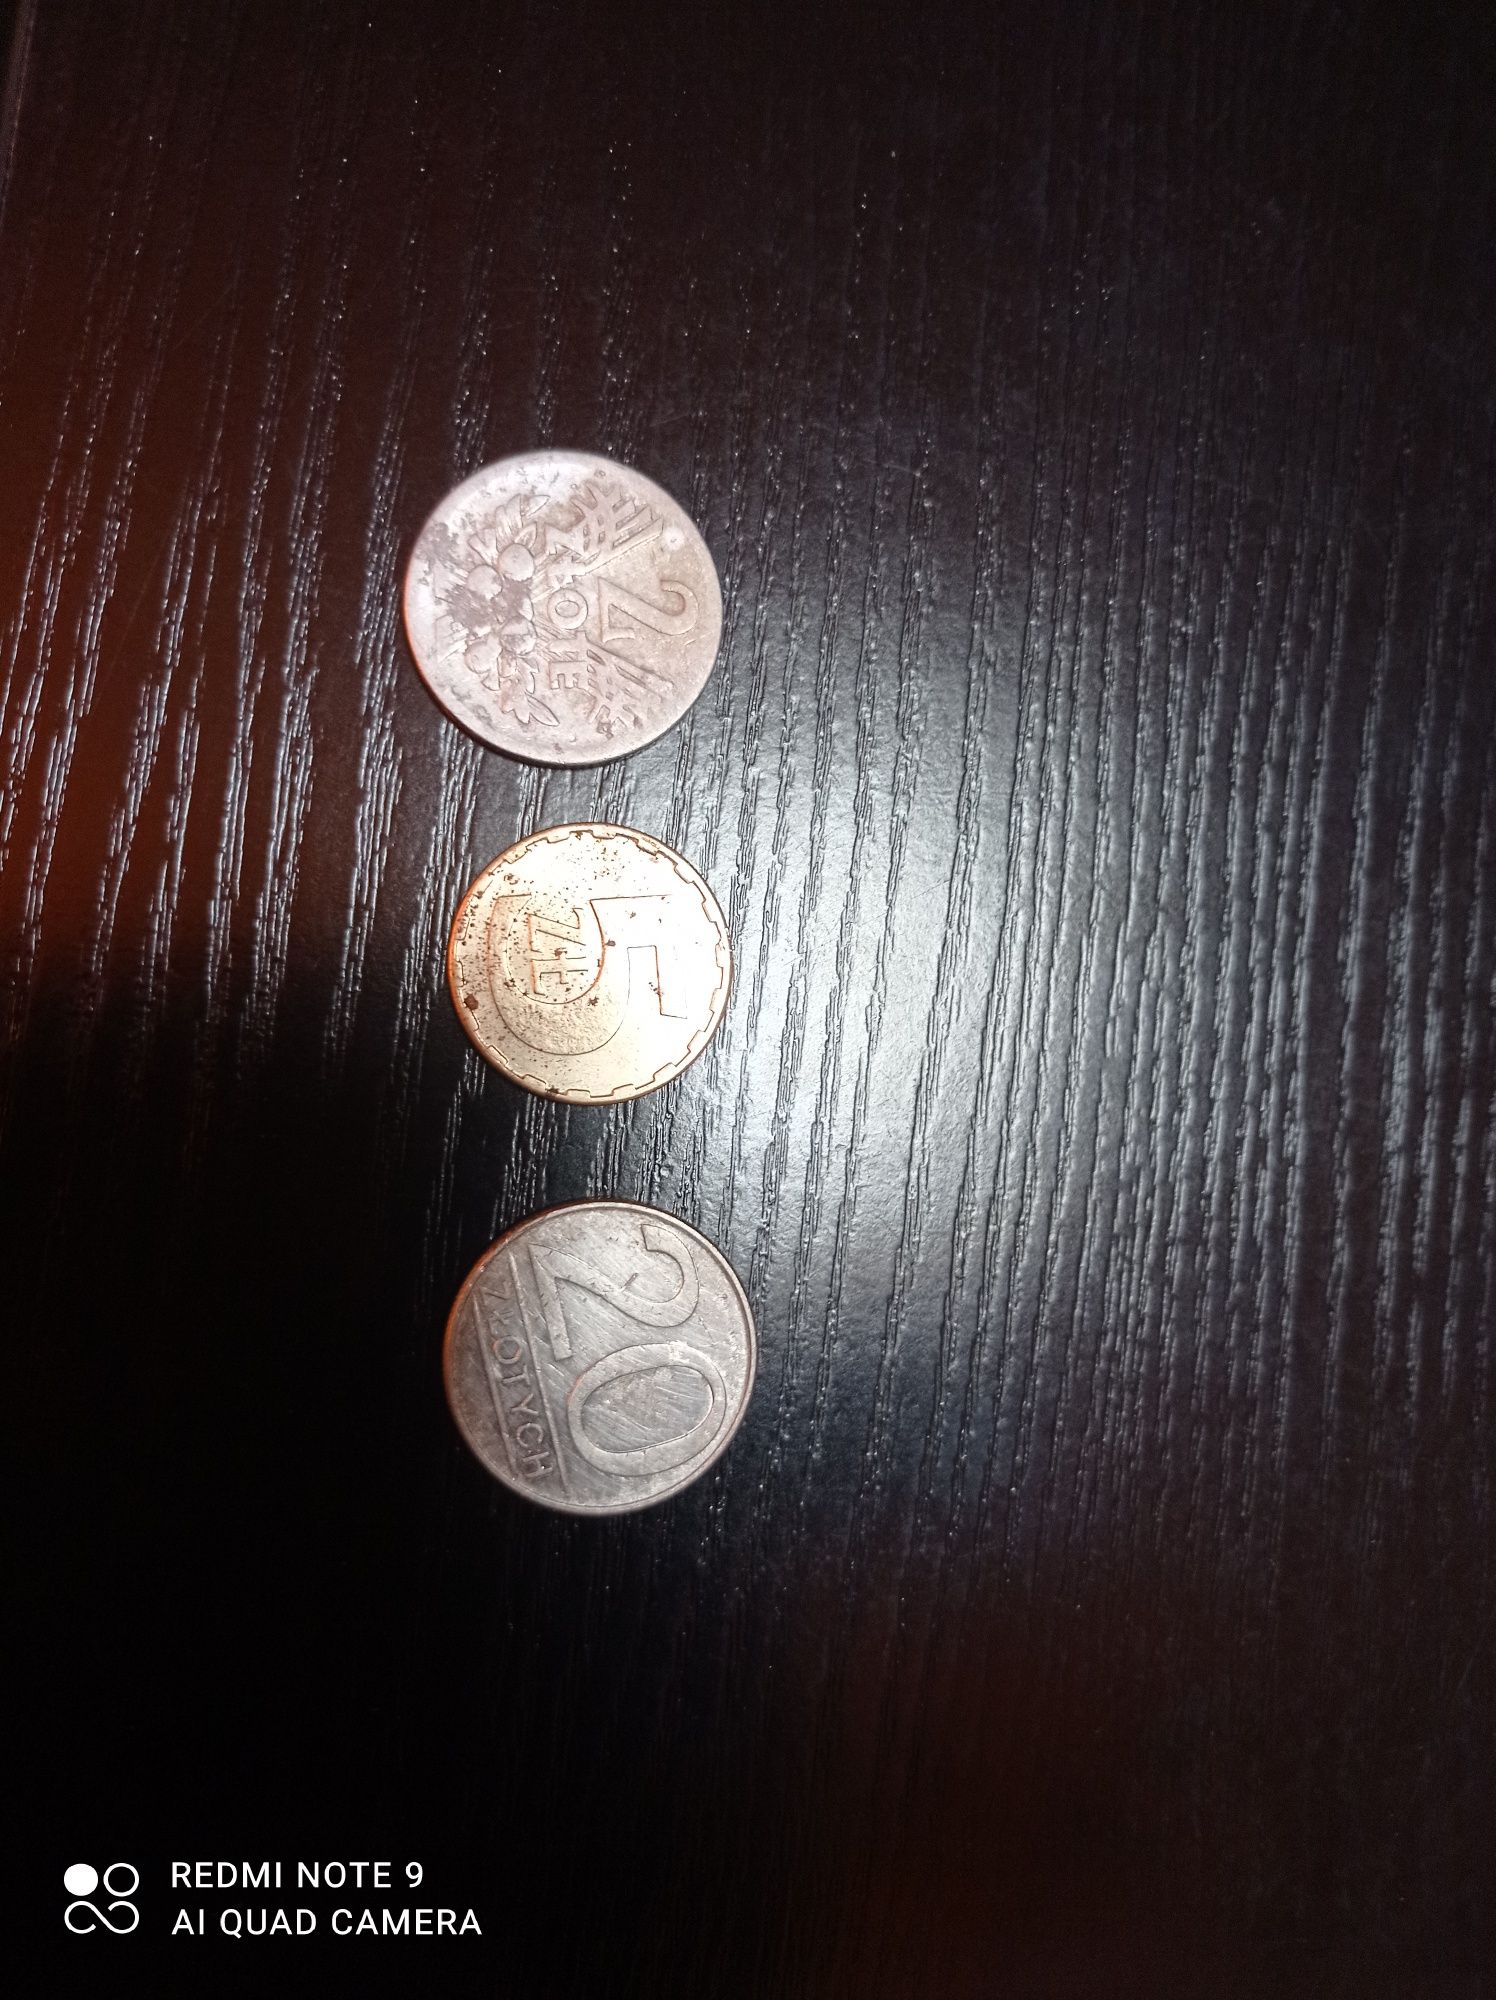 Monety z PRL 2,5,20